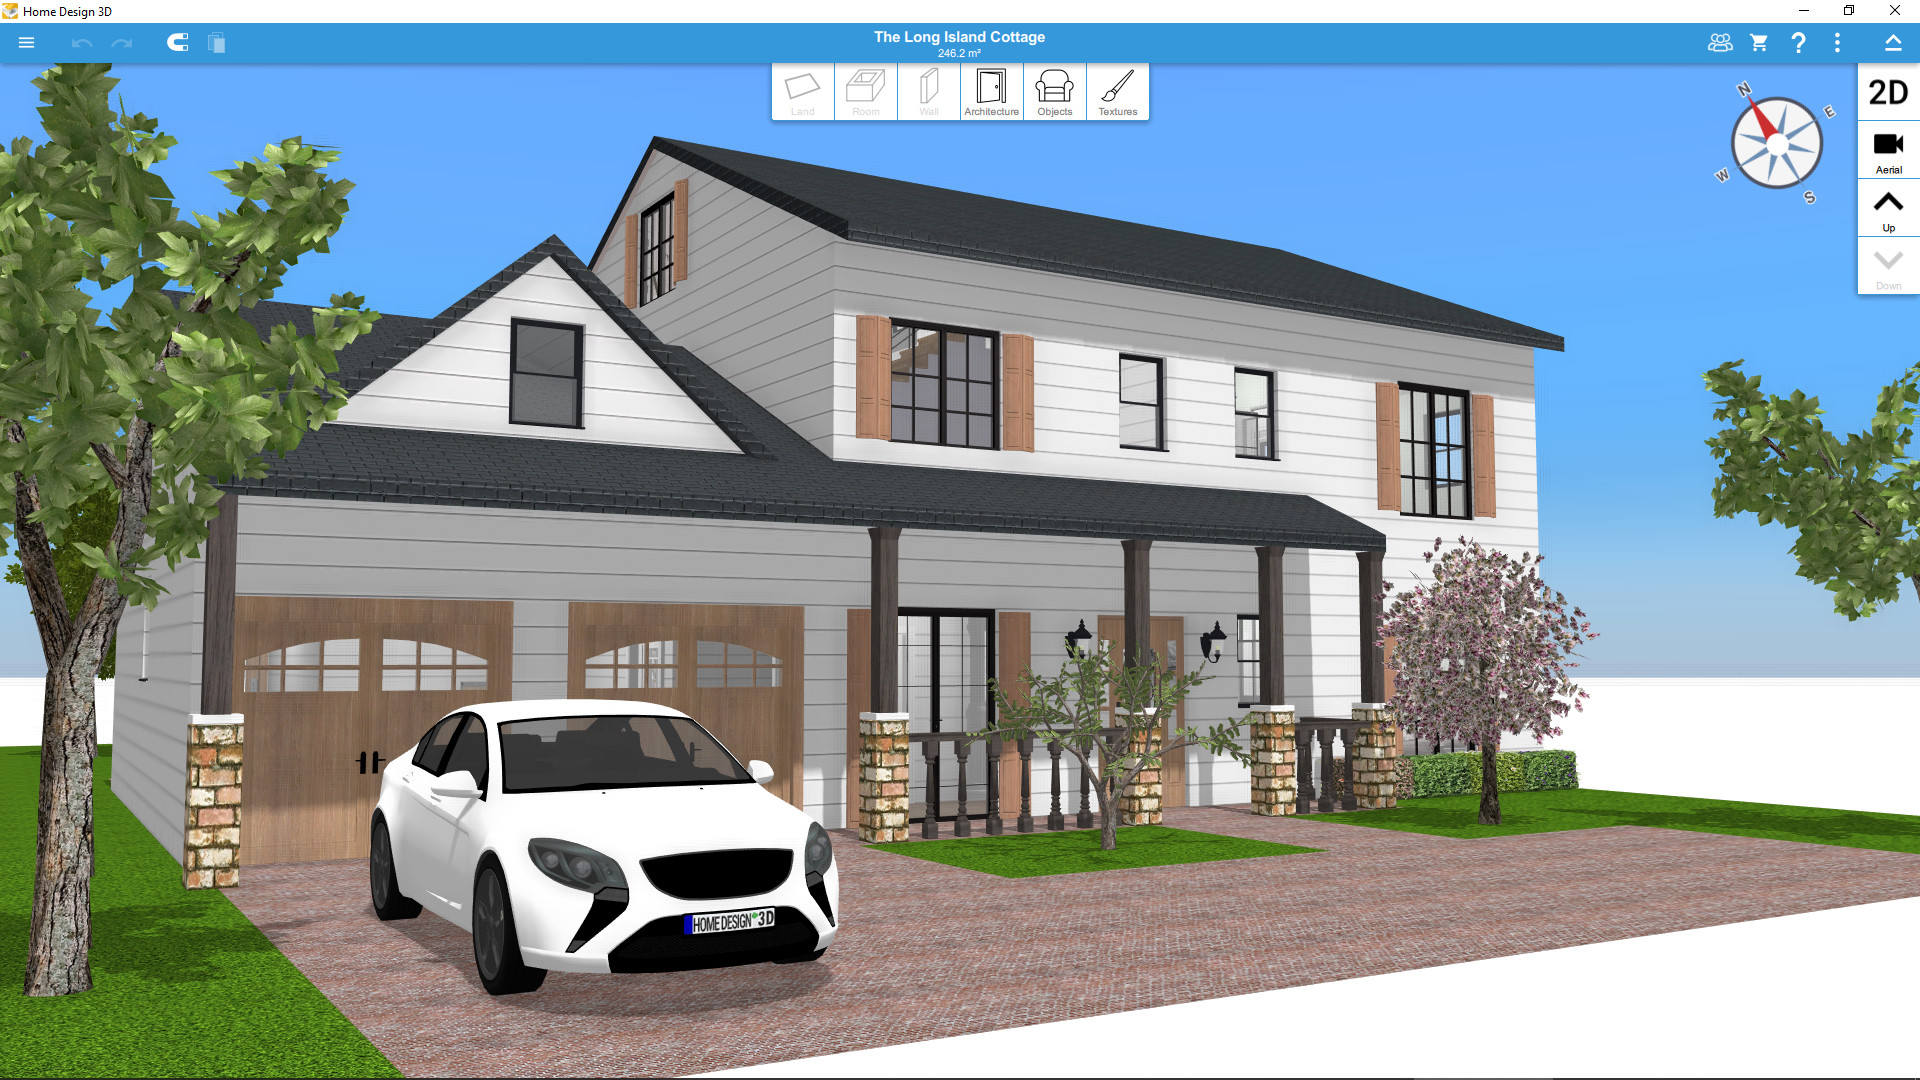 Onnauwkeurig Werkloos Wreed Home Design 3D op Steam